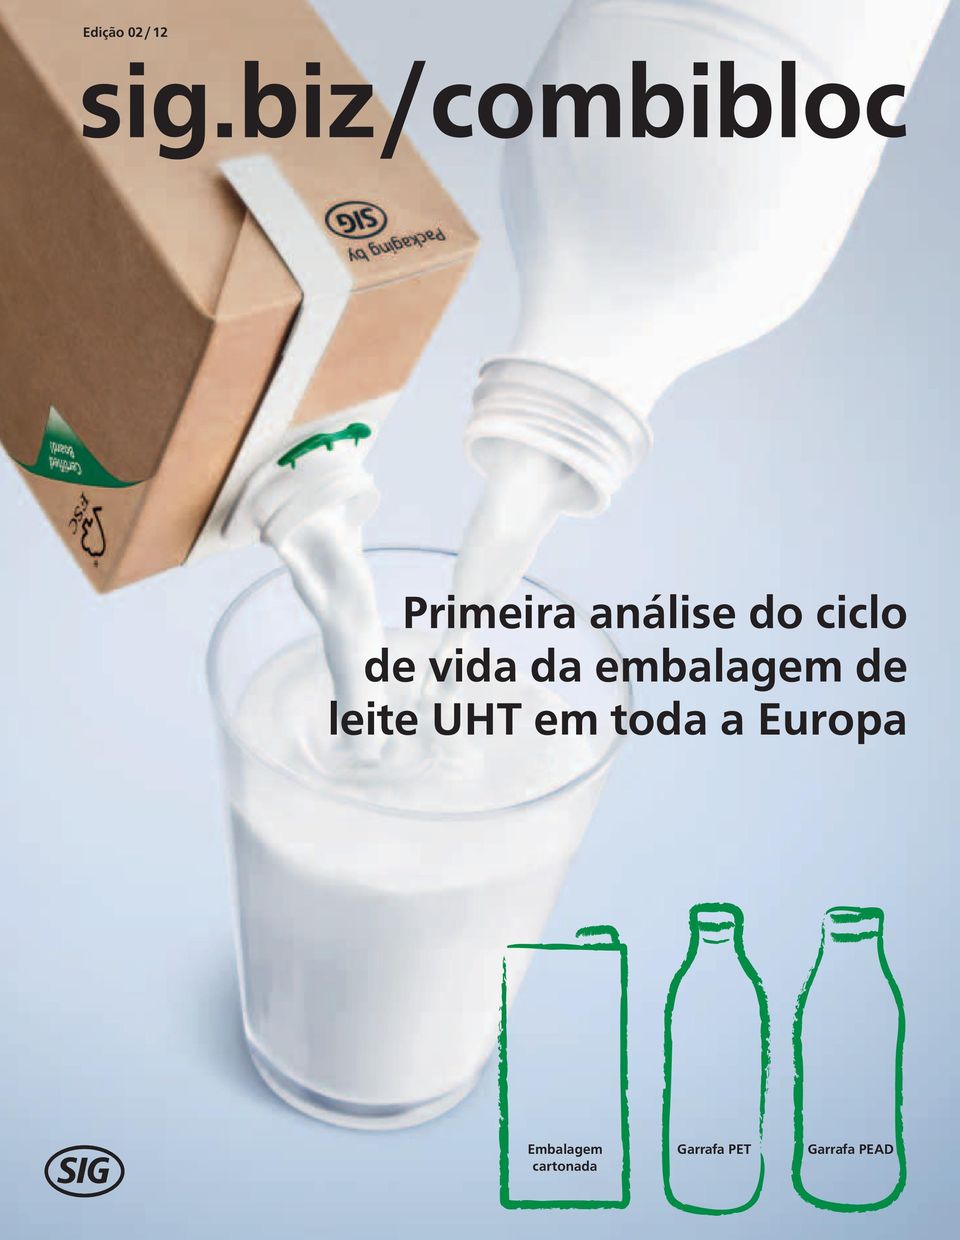 leite UHT em toda a Europa